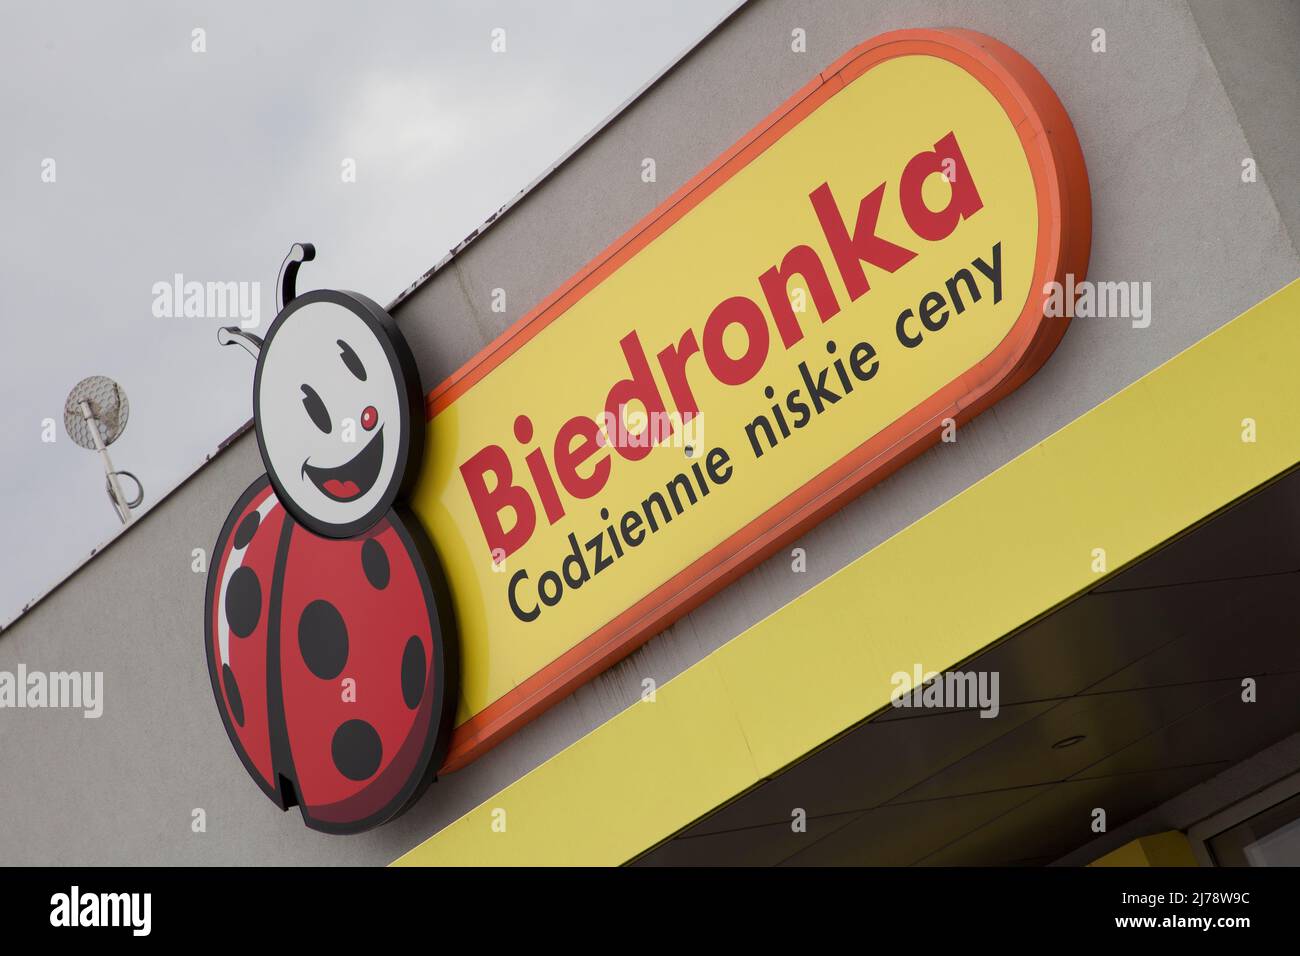 Biedronka Supermarket in Pruszcz Gdanski Poland Stock Photo - Alamy